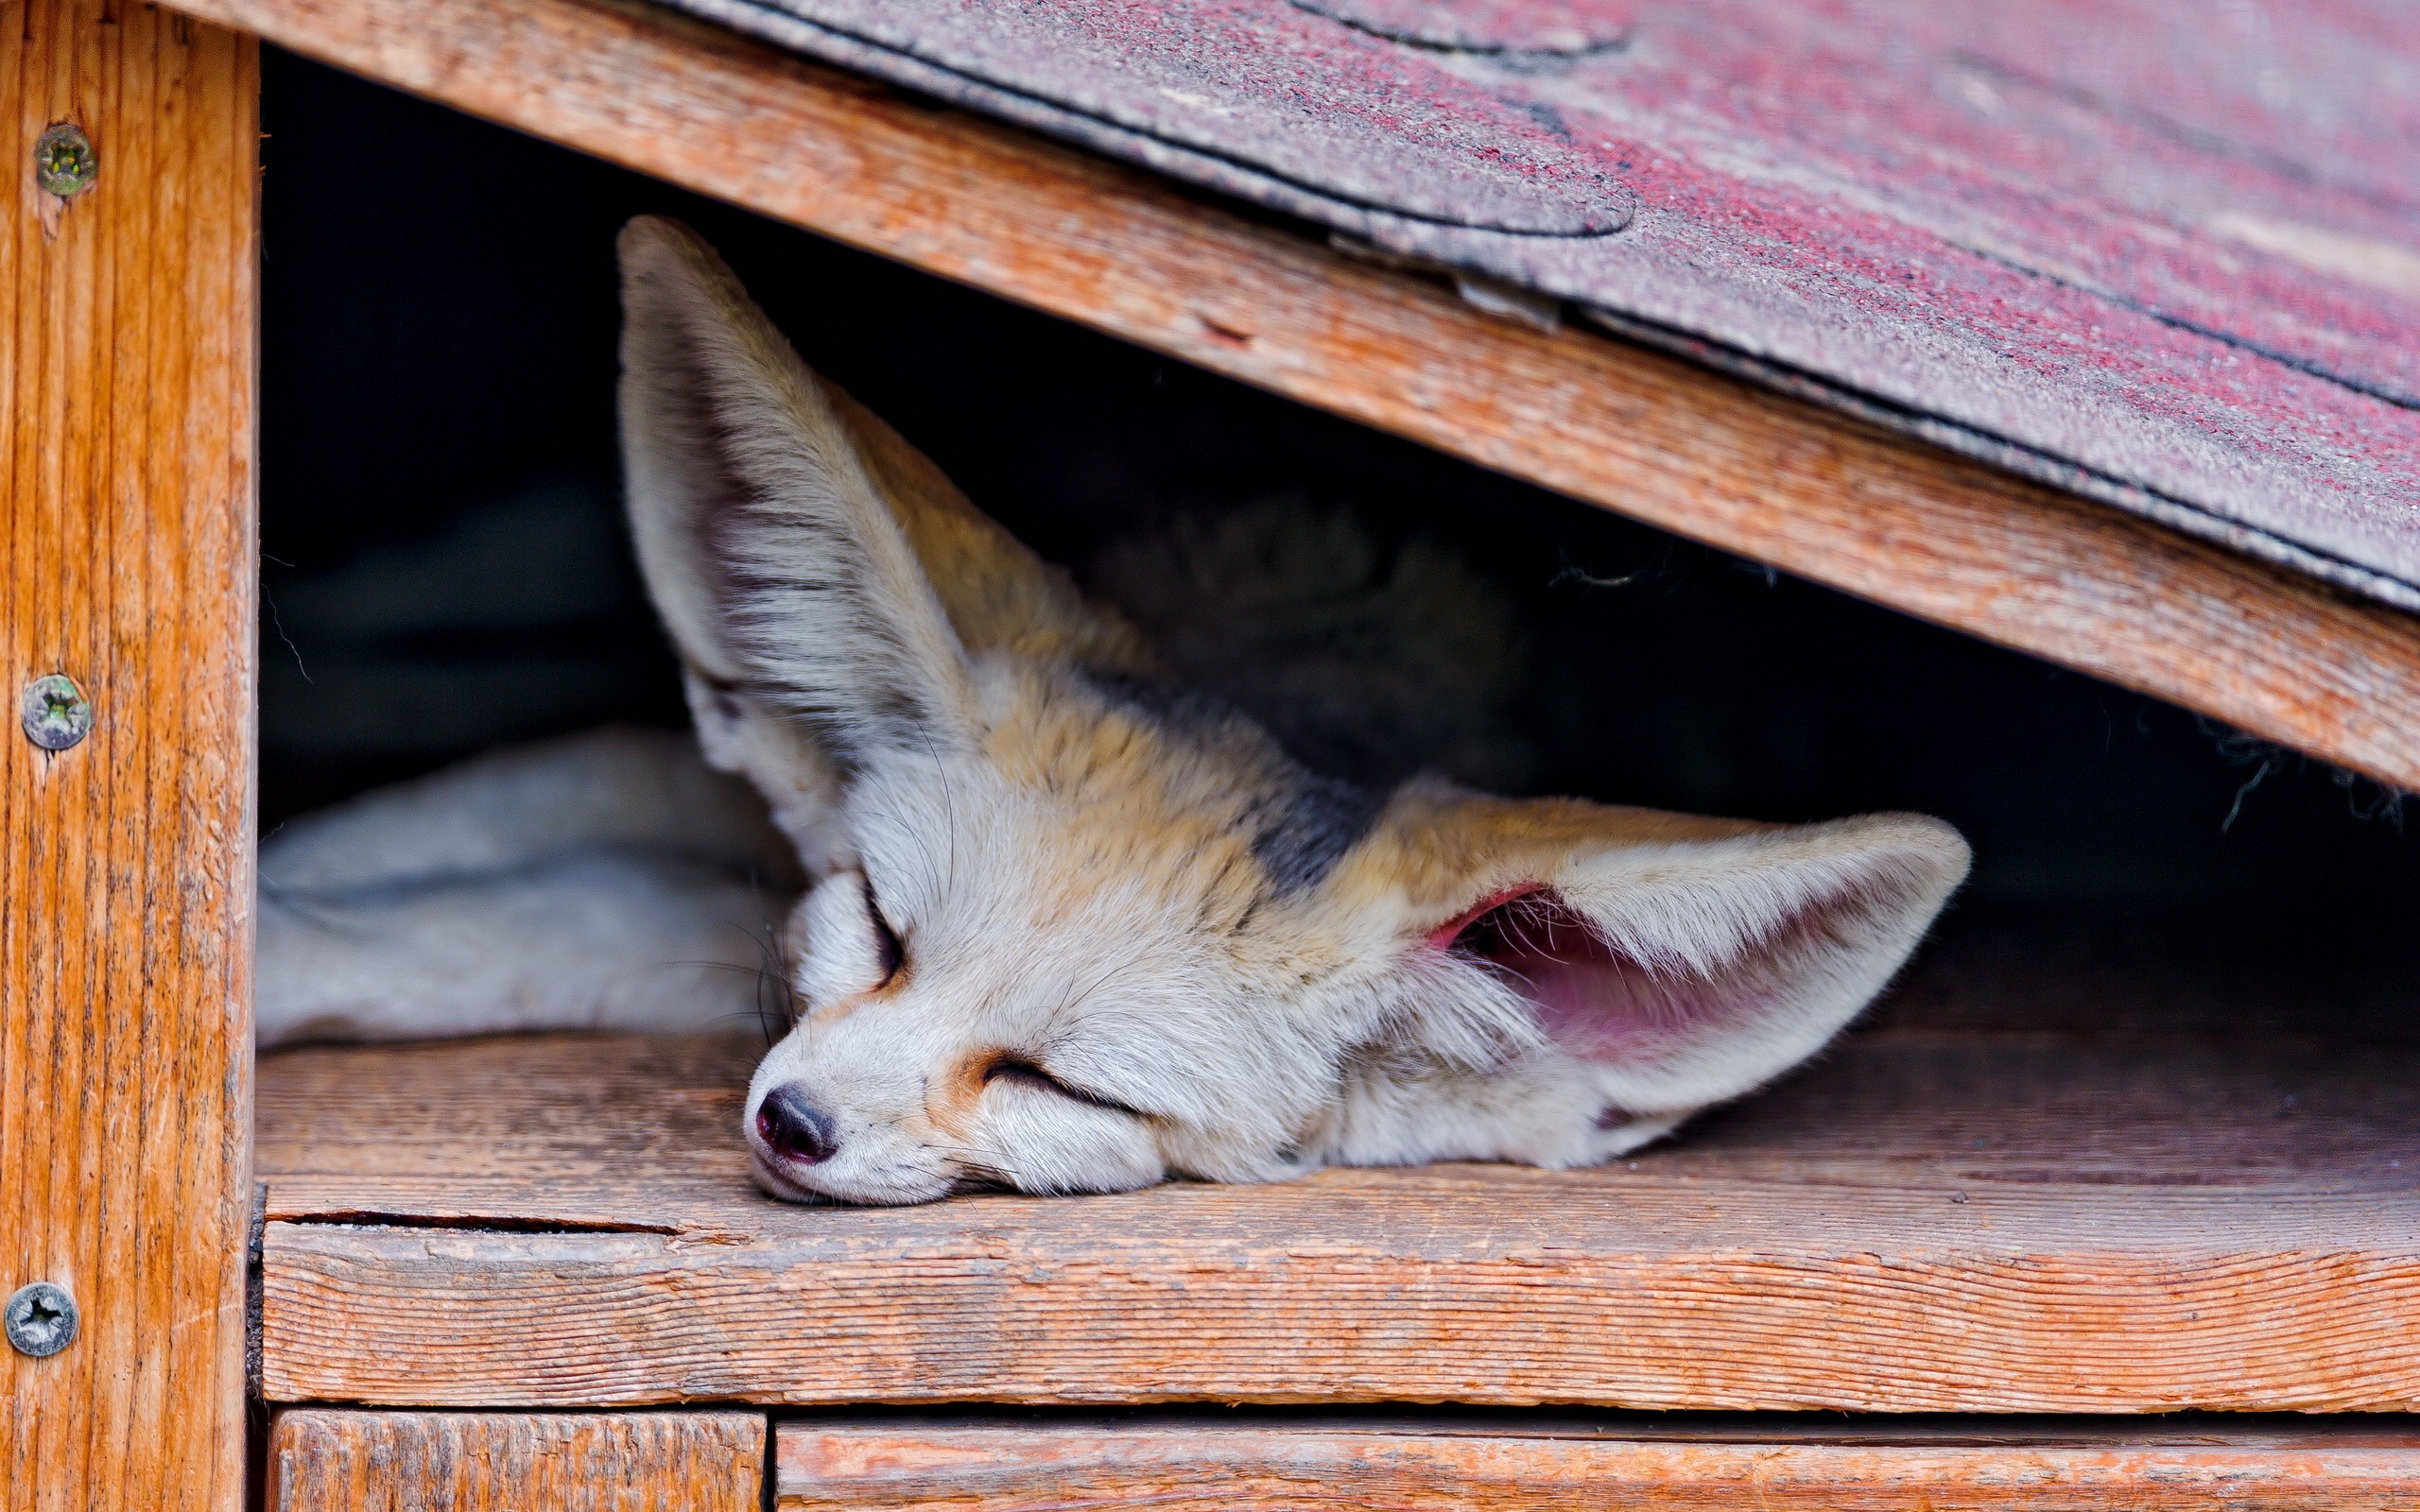 General 2560x1600 animals fox sleeping fennec mammals closeup closed eyes wood lying down lying on front